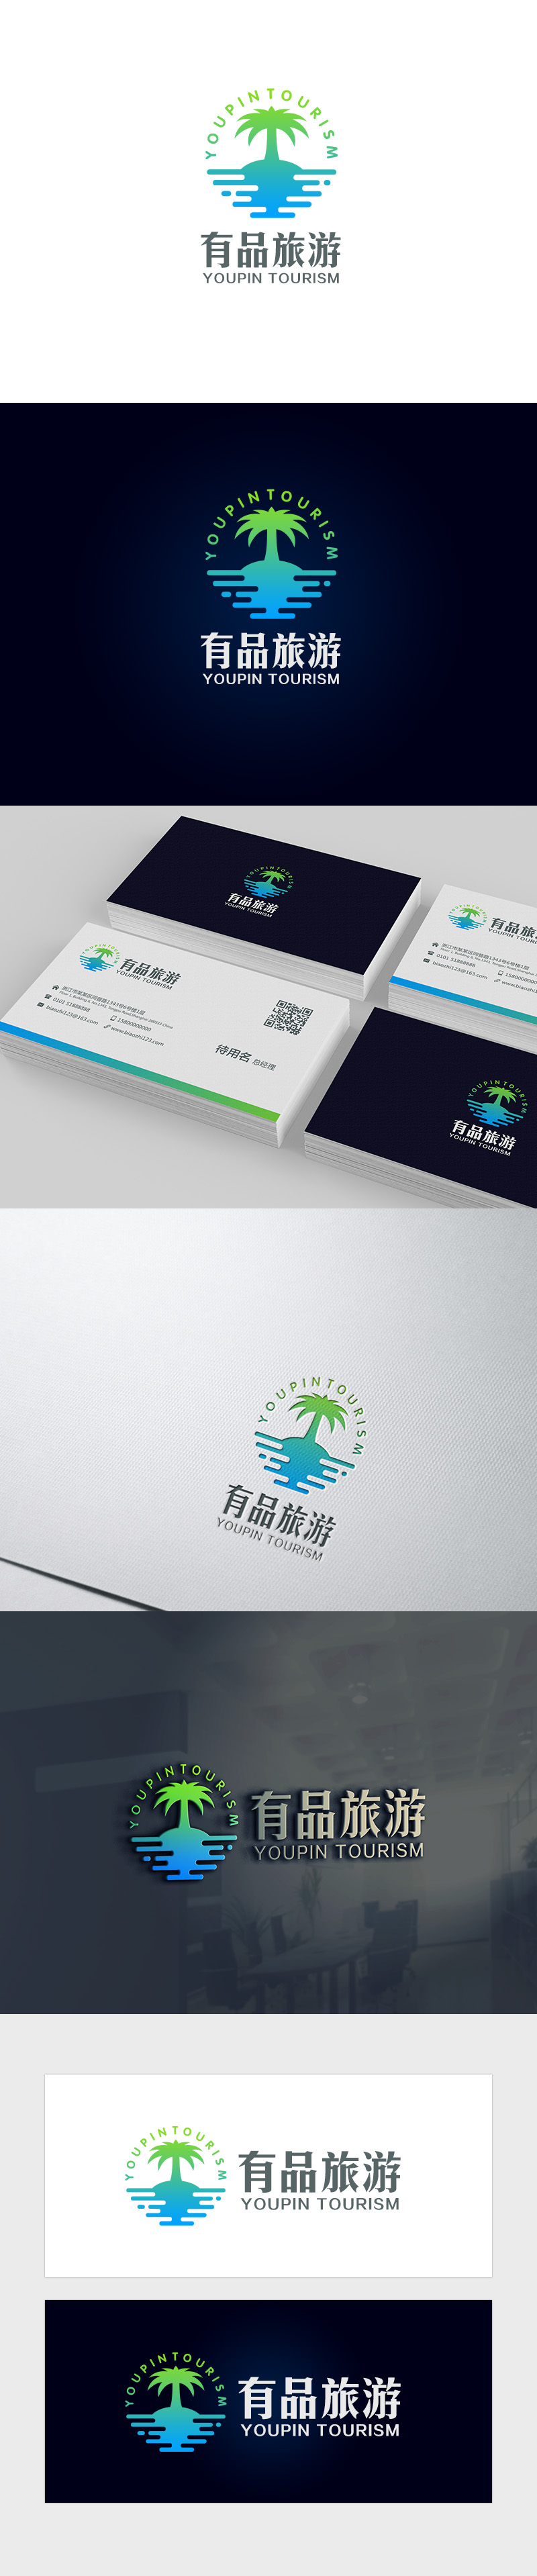 吴晓伟的有品旅游logo设计